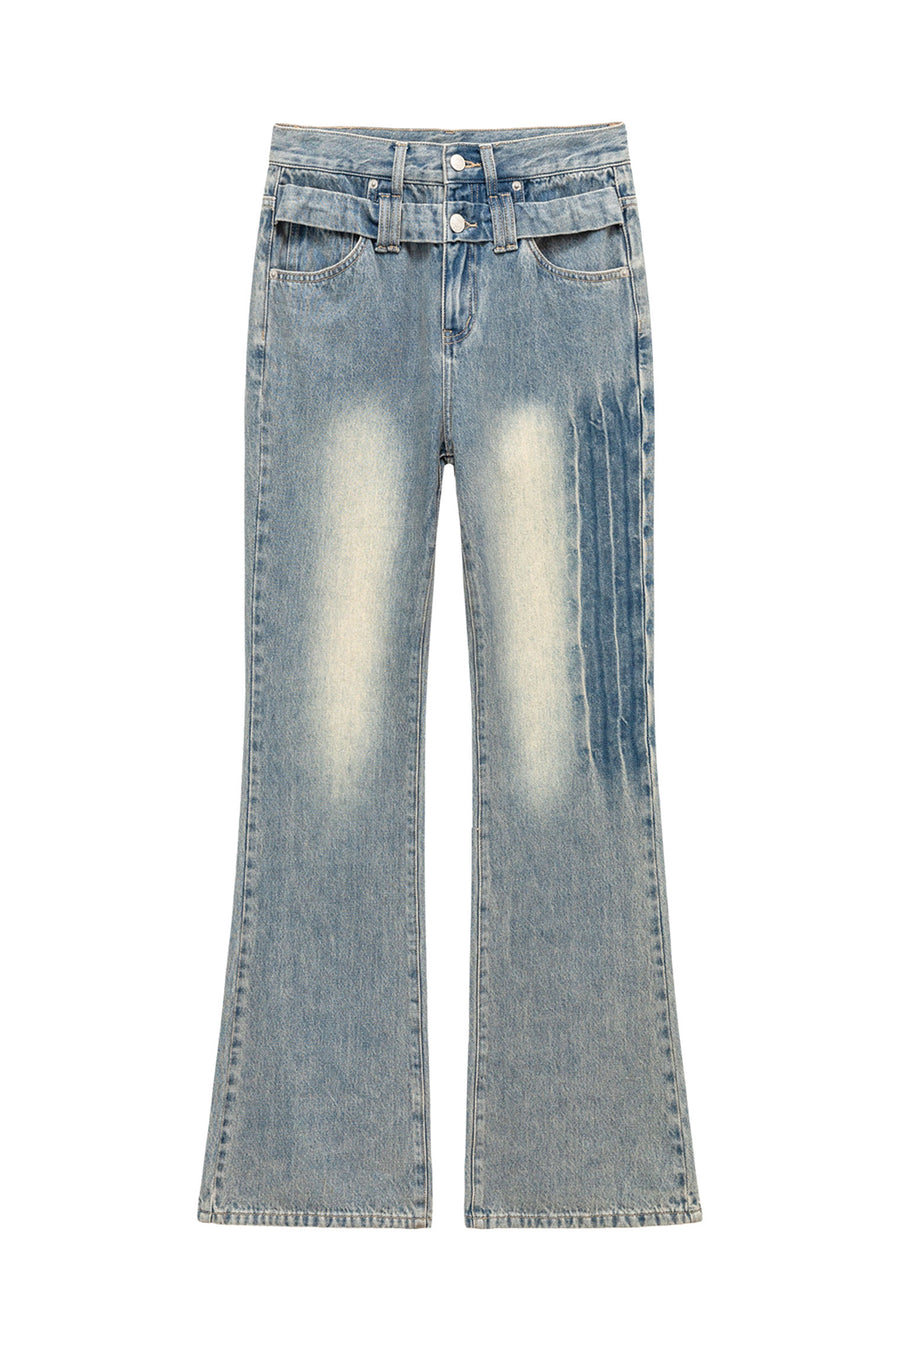 CHUU Double Button Vintage Bootcut Denim Jeans